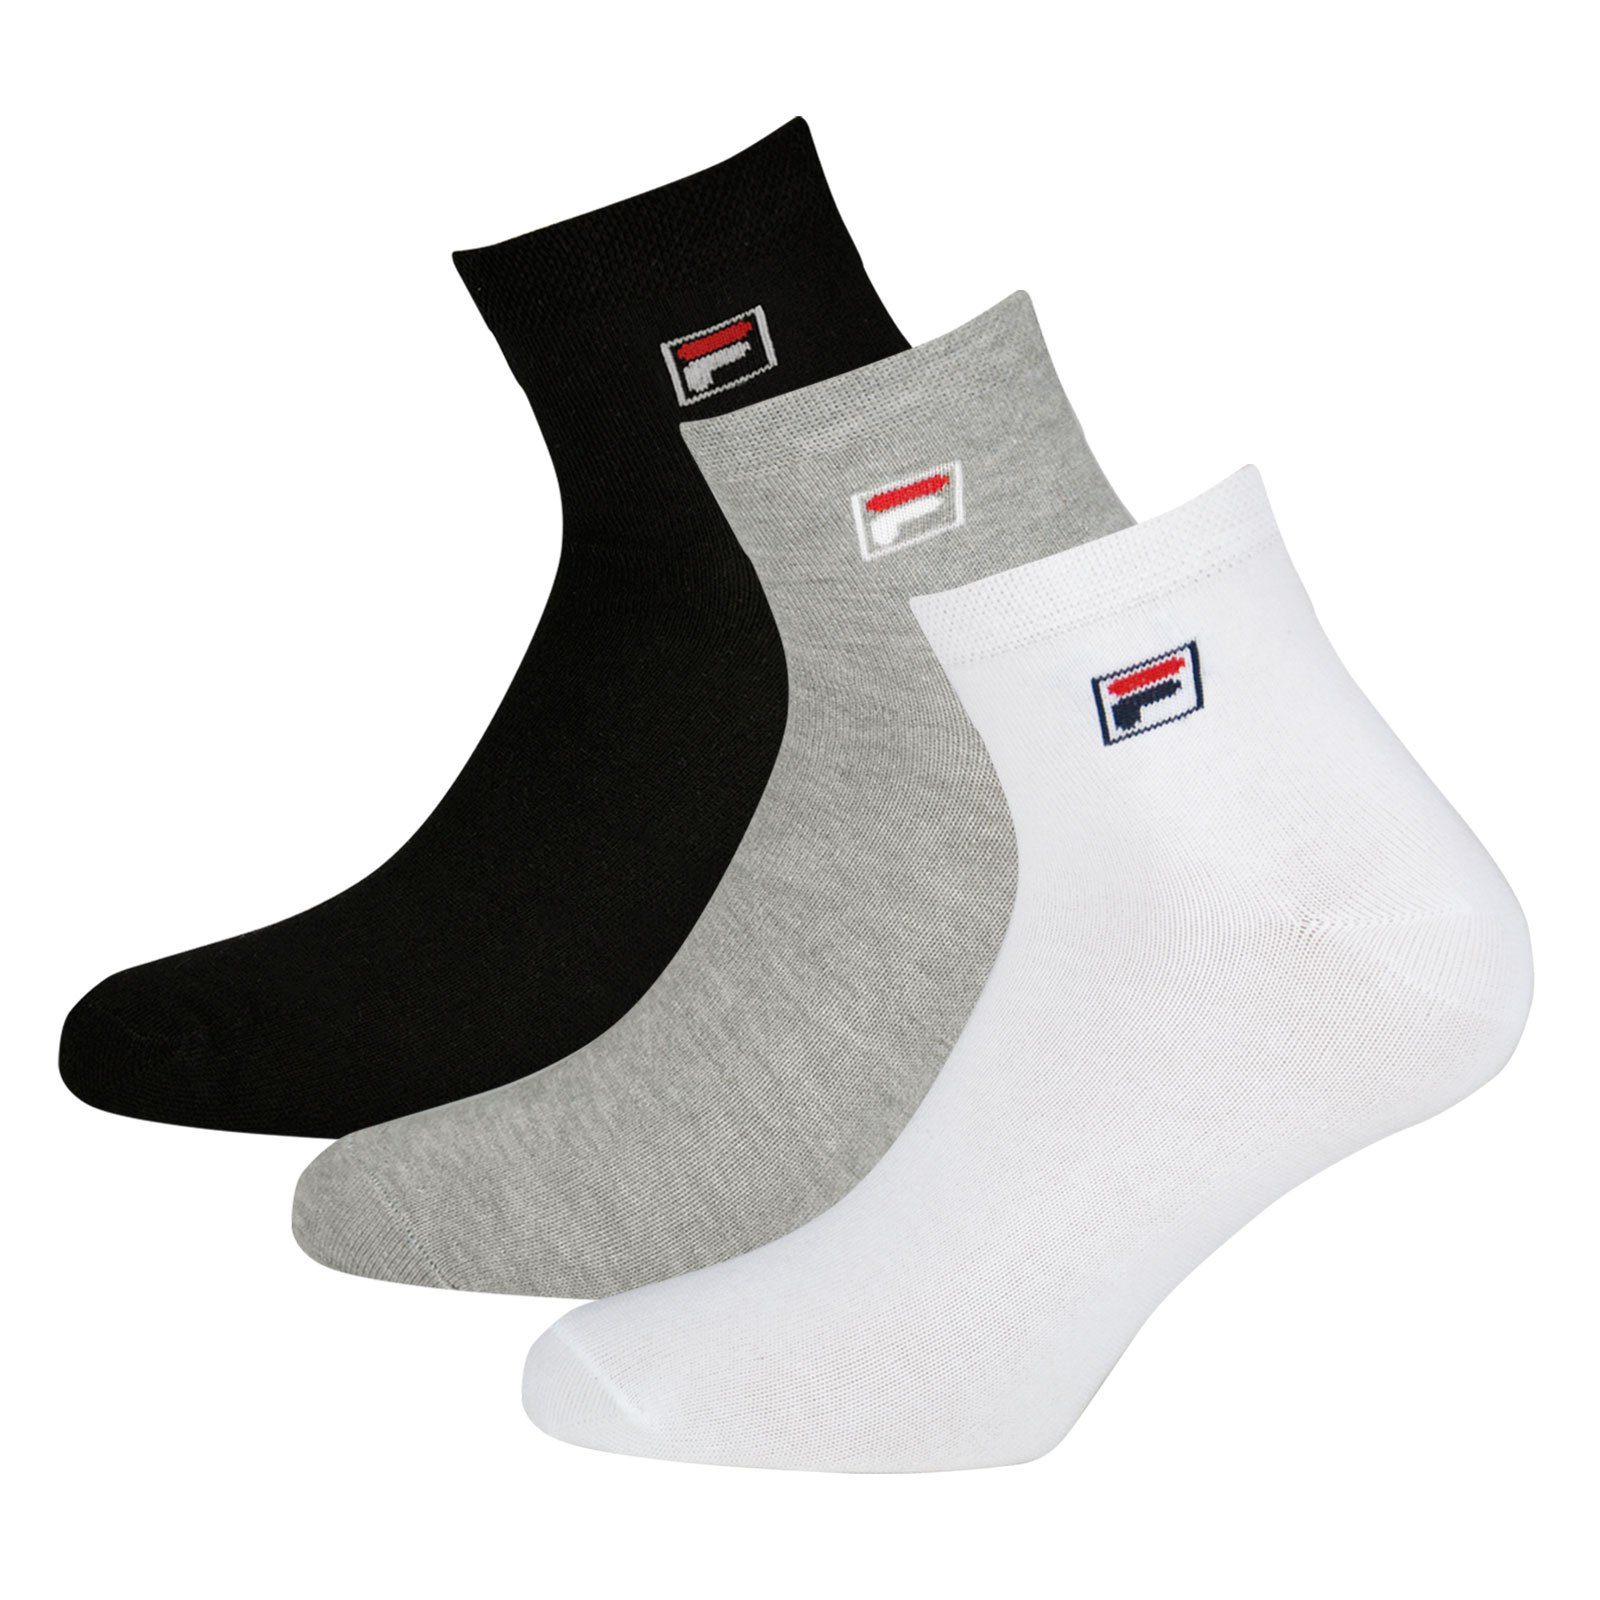 Piquebund Socken (12-Paar) black grey white / elastischem / Sportsocken 700 mit Fila Quarter